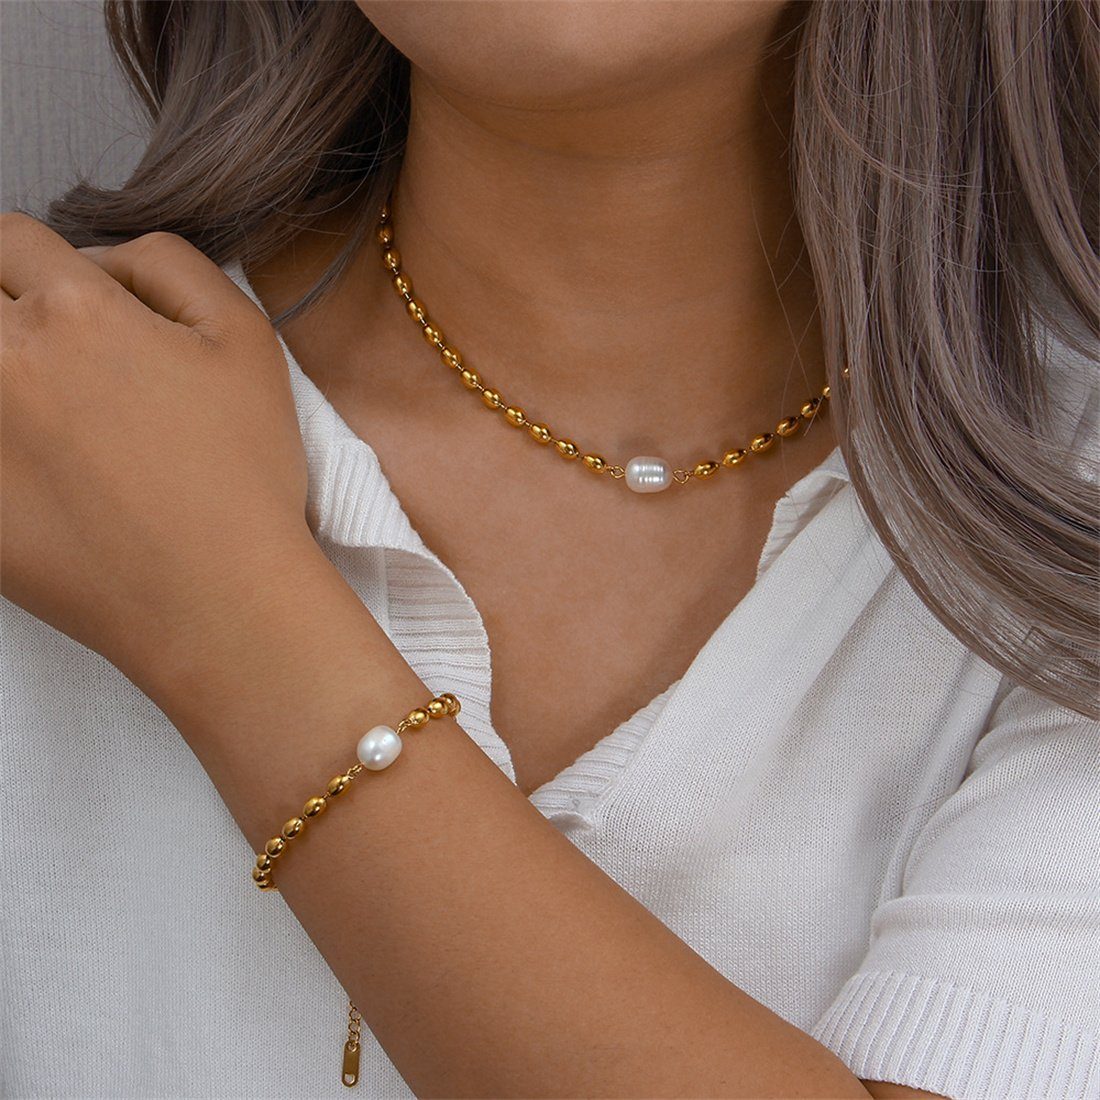 DÖRÖY Schmuckset Damen Gold Perlen Armband Halskette 2er Set, Mode  Accessoire Set